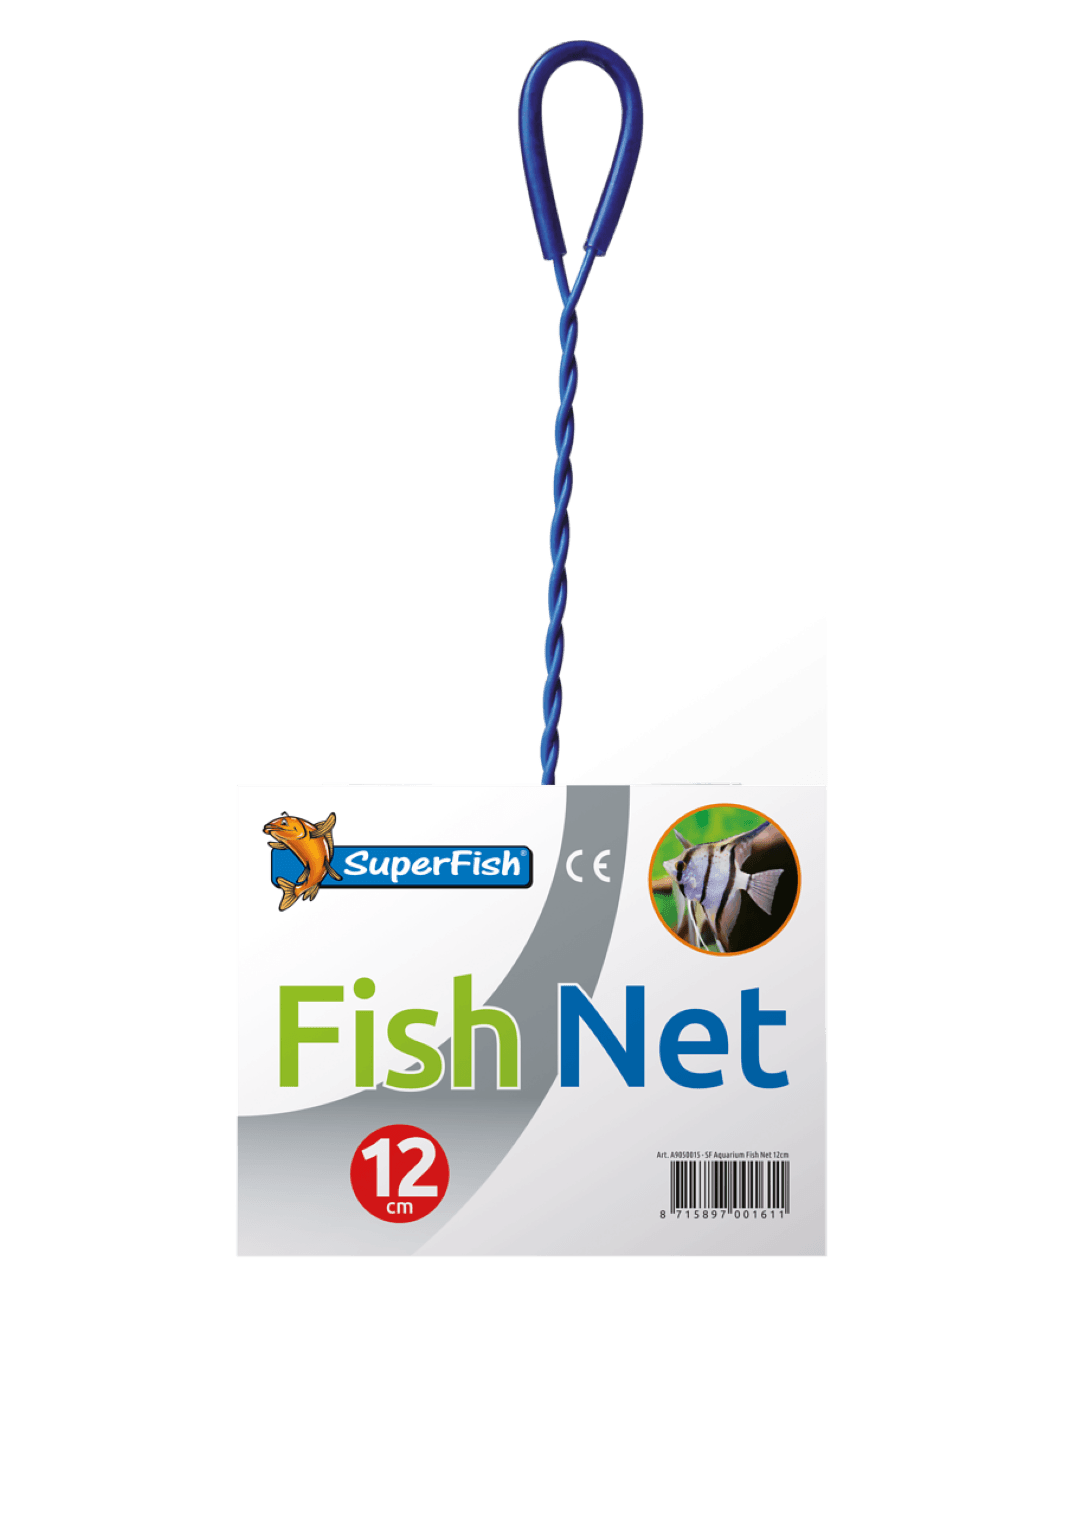 https://www.warentuin.nl/media/catalog/product/1/7/1778715897001611_superfish_aquarium_accessoire_superfish_aquarium_schepnetje_12_51eb.png